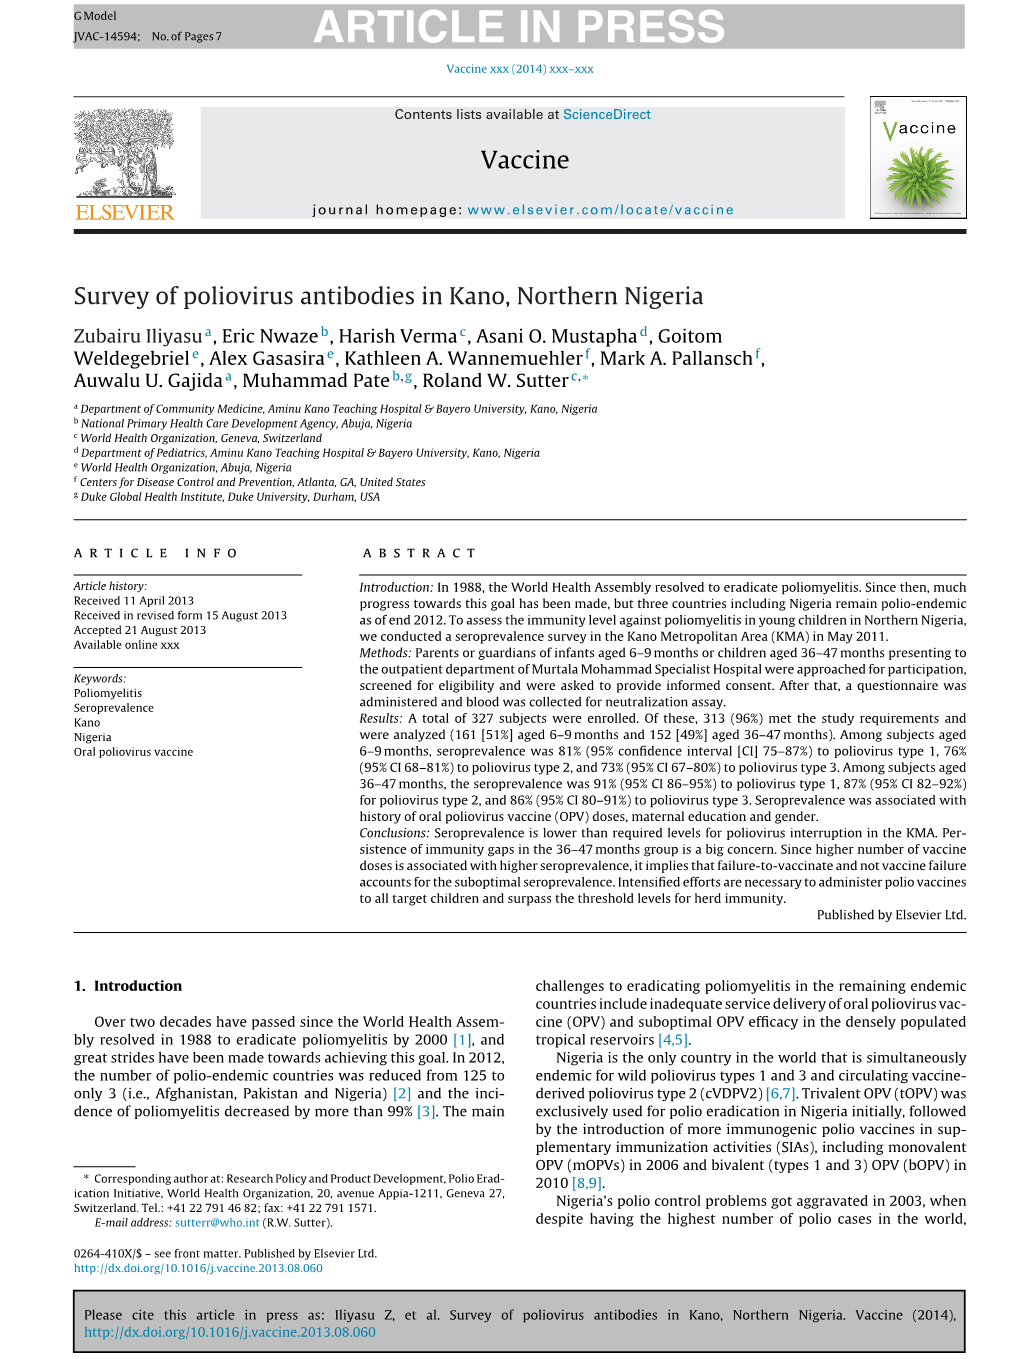 Survey of Poliovirus Antibodies in Kano, Northern Nigeria